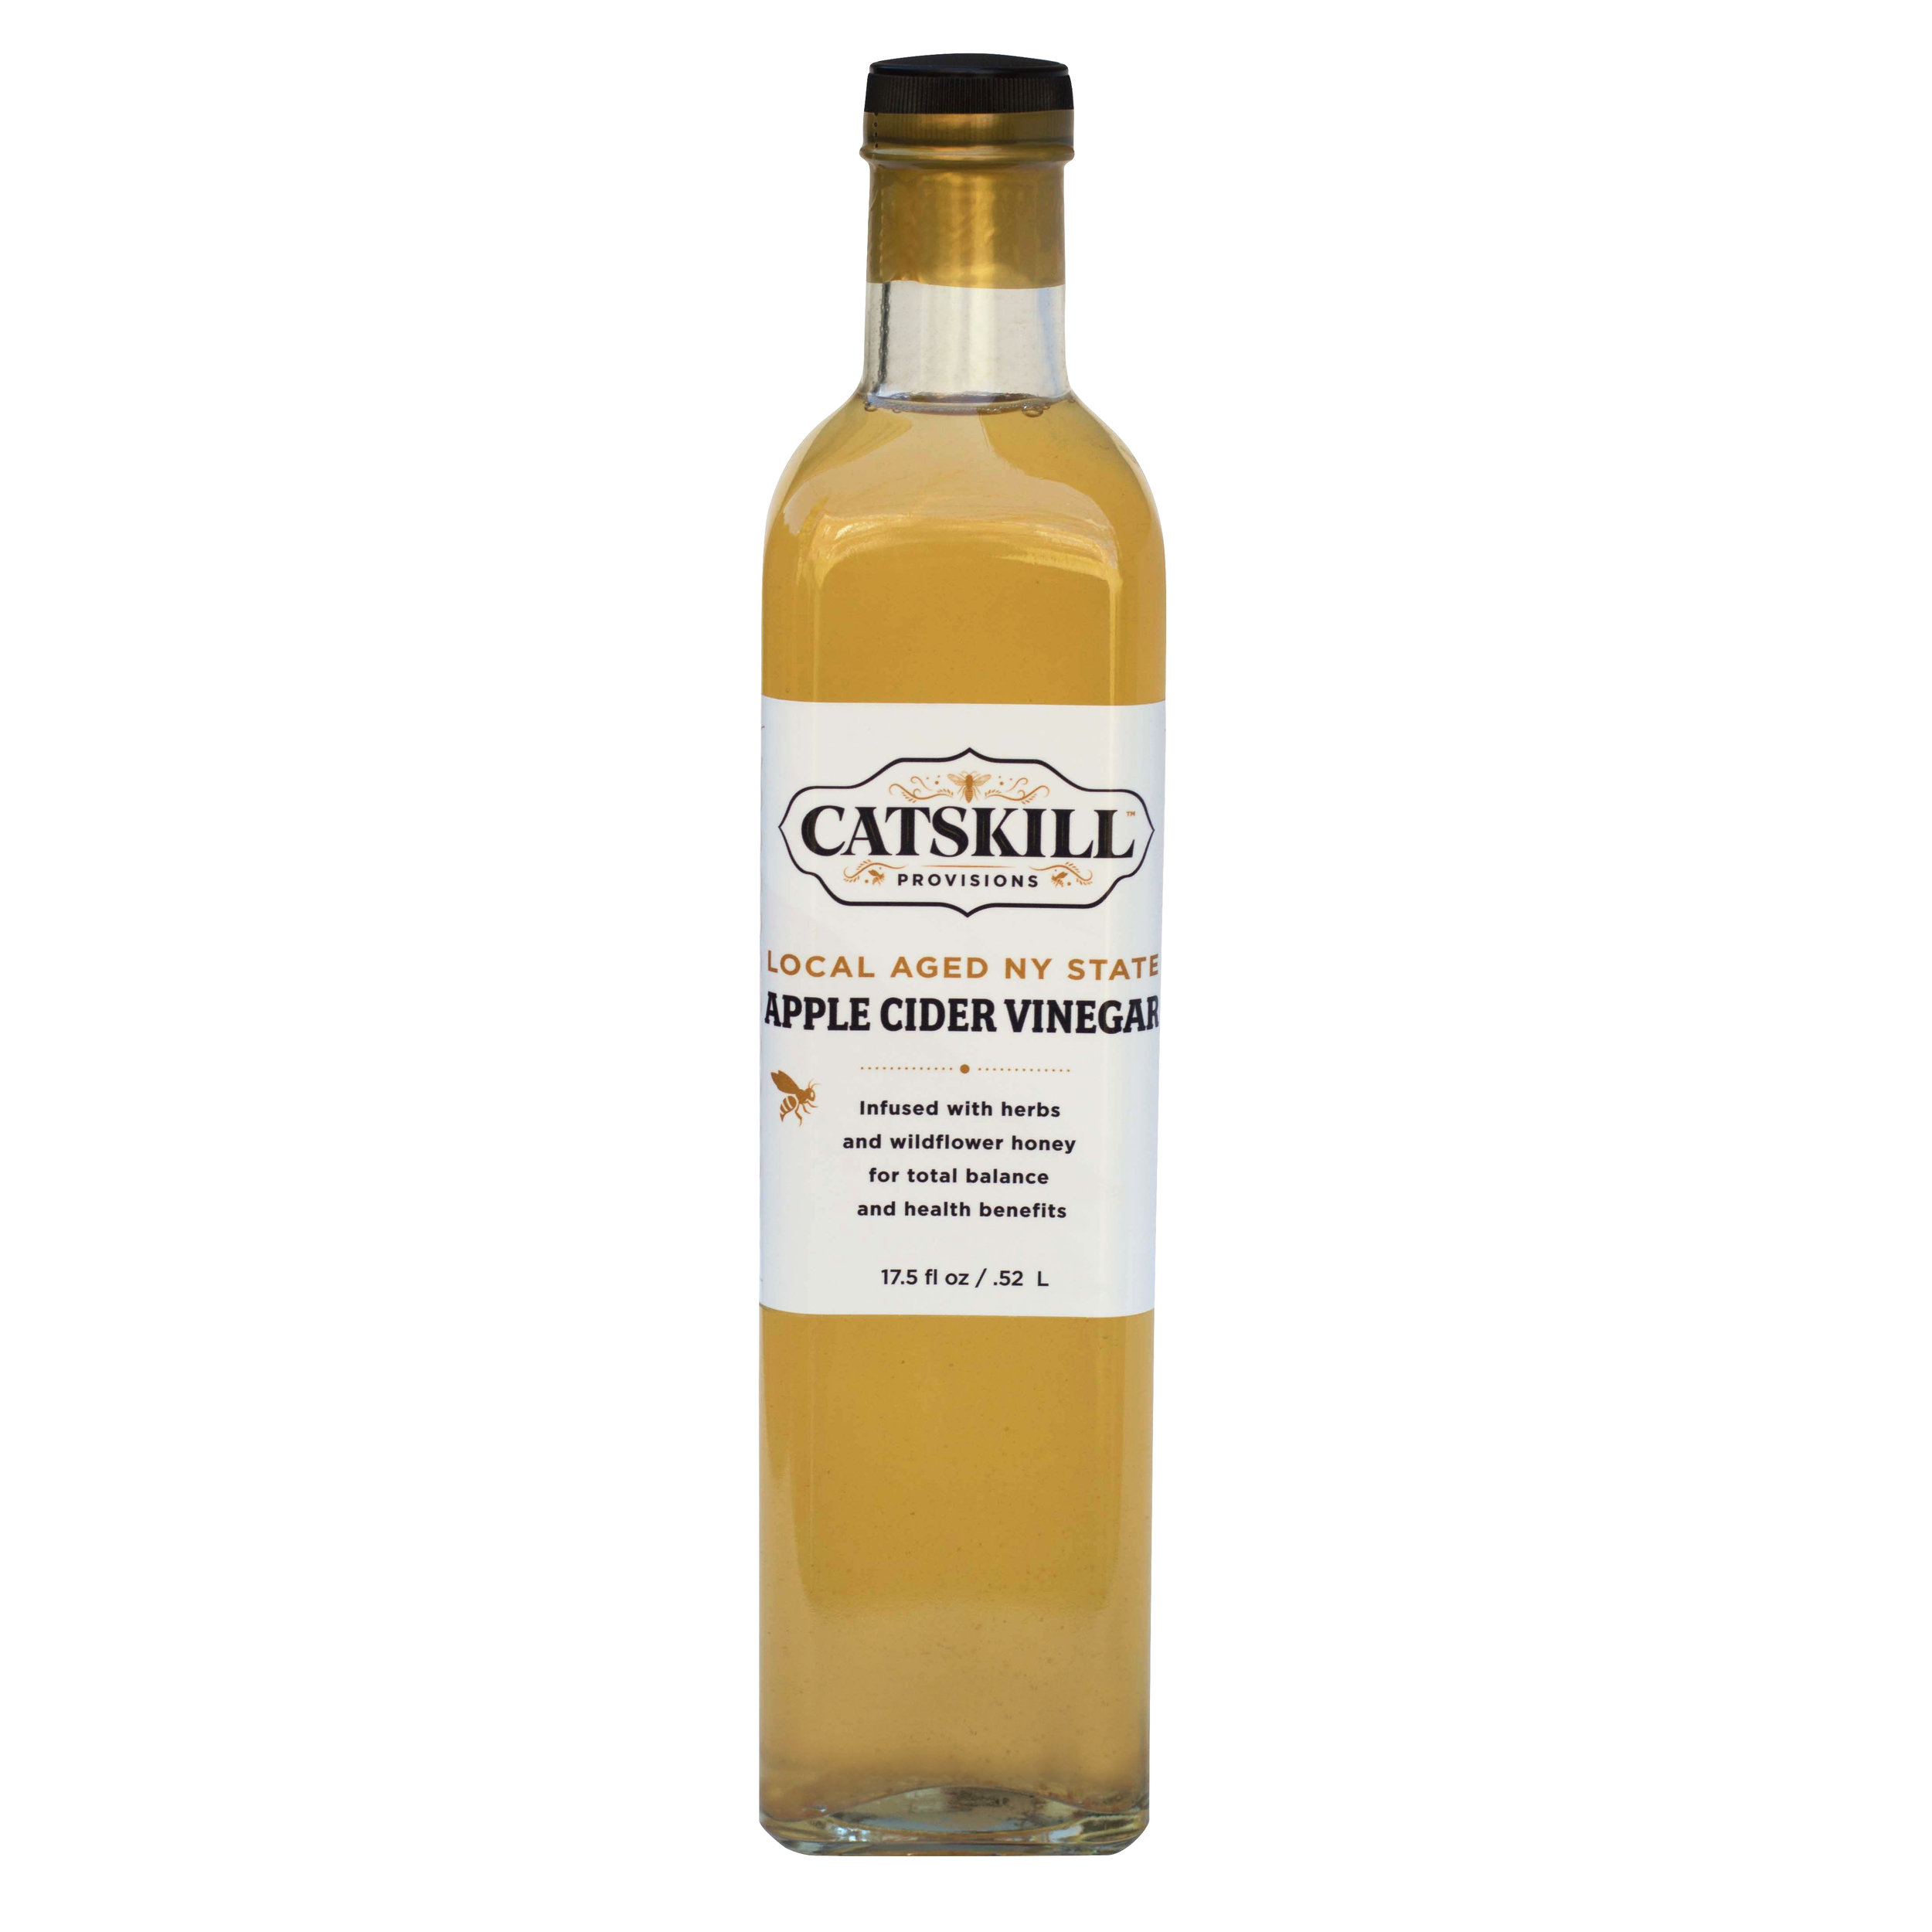 Catskill Provisions Apple Cider Vinegar.jpg